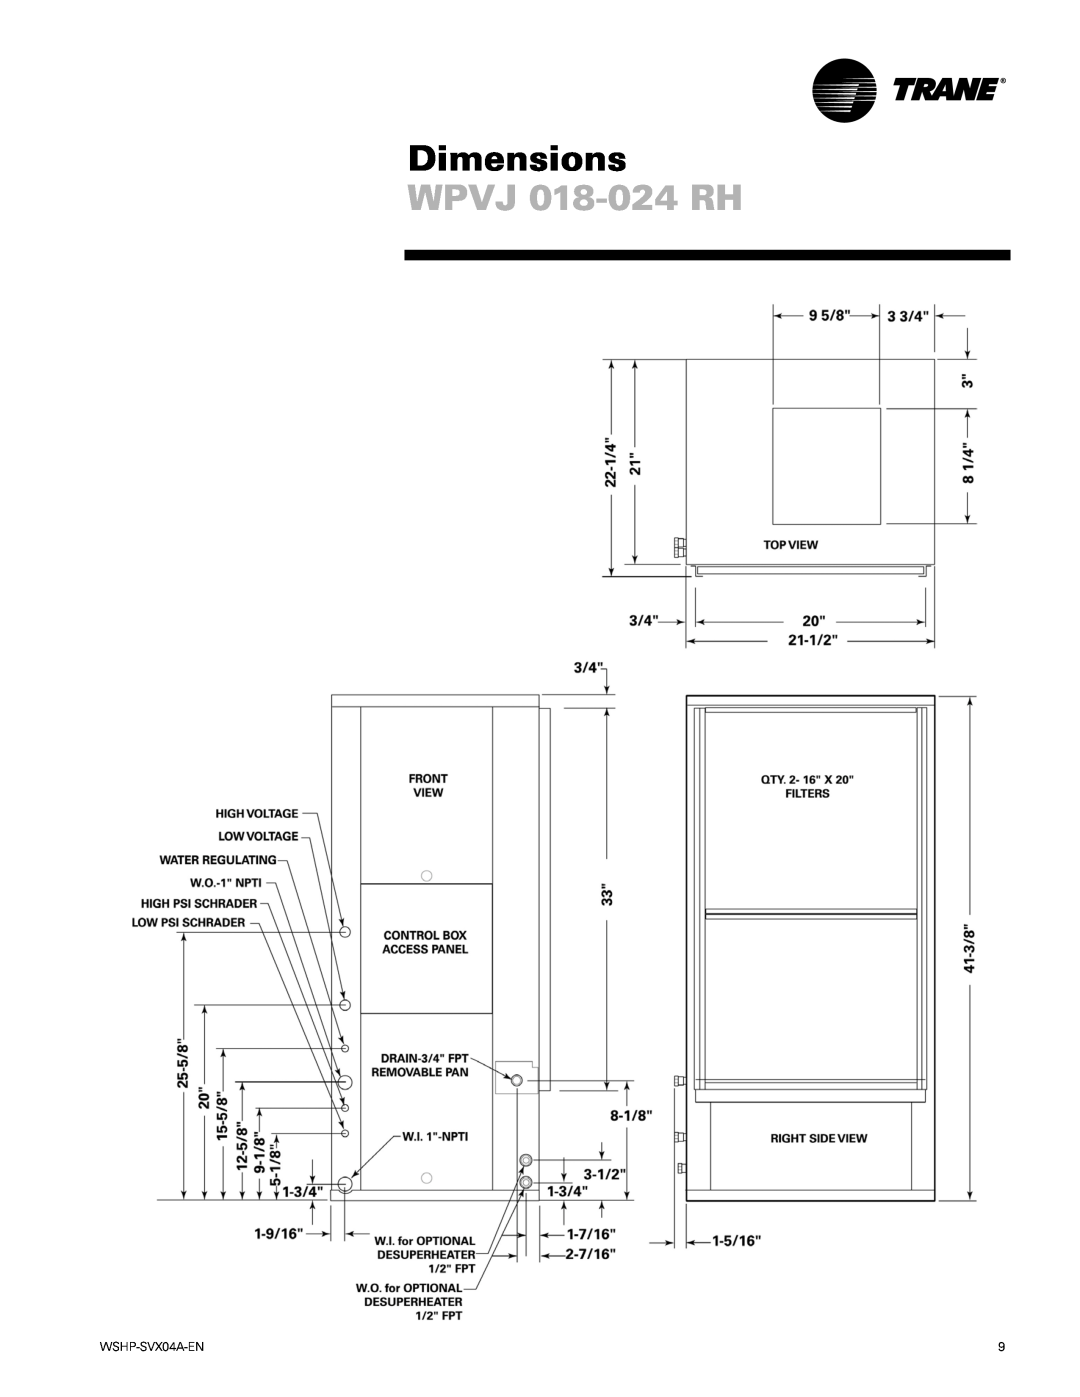 Trane WPHF manual WPVJ 018-024RH, Dimensions, WSHP-SVX04A-EN 